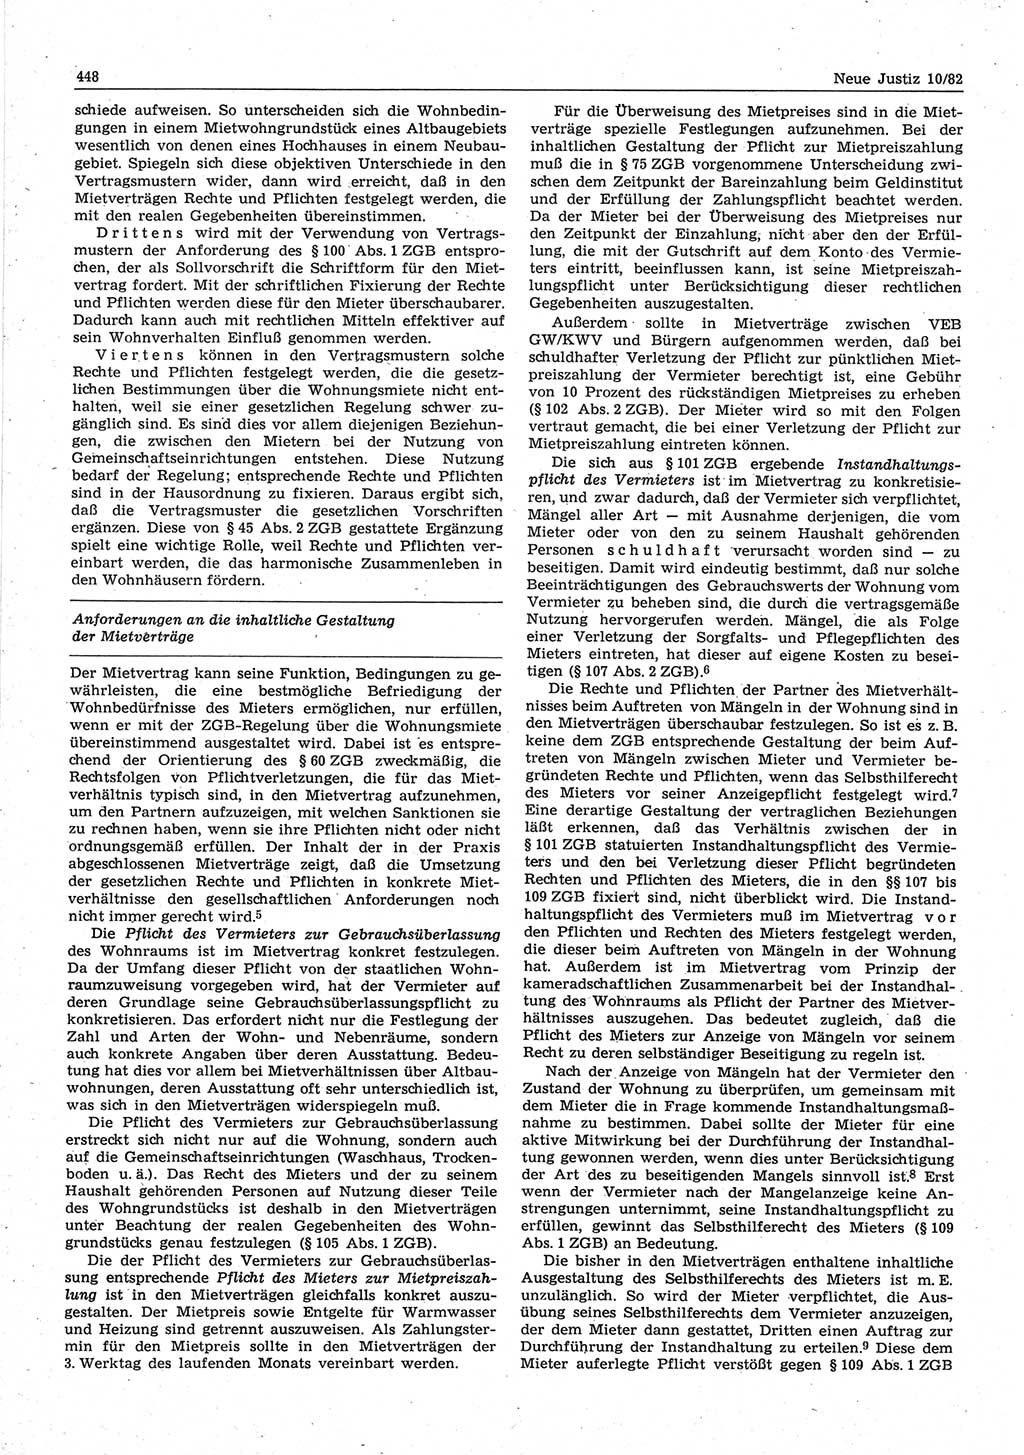 Neue Justiz (NJ), Zeitschrift für sozialistisches Recht und Gesetzlichkeit [Deutsche Demokratische Republik (DDR)], 36. Jahrgang 1982, Seite 448 (NJ DDR 1982, S. 448)